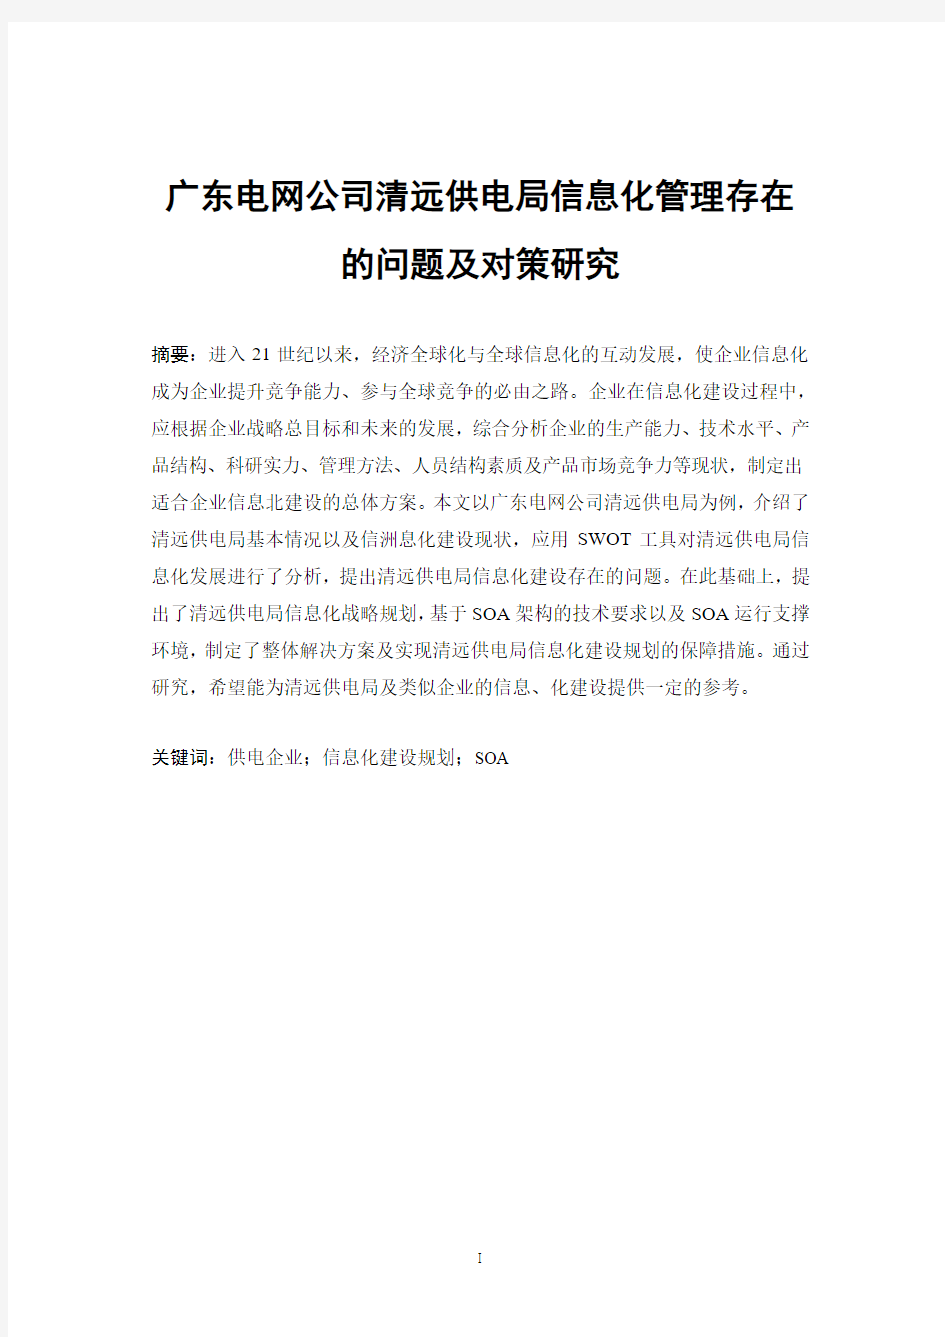 广东电网公司清远供电局信息化管理存在的问题及对策研究 正文